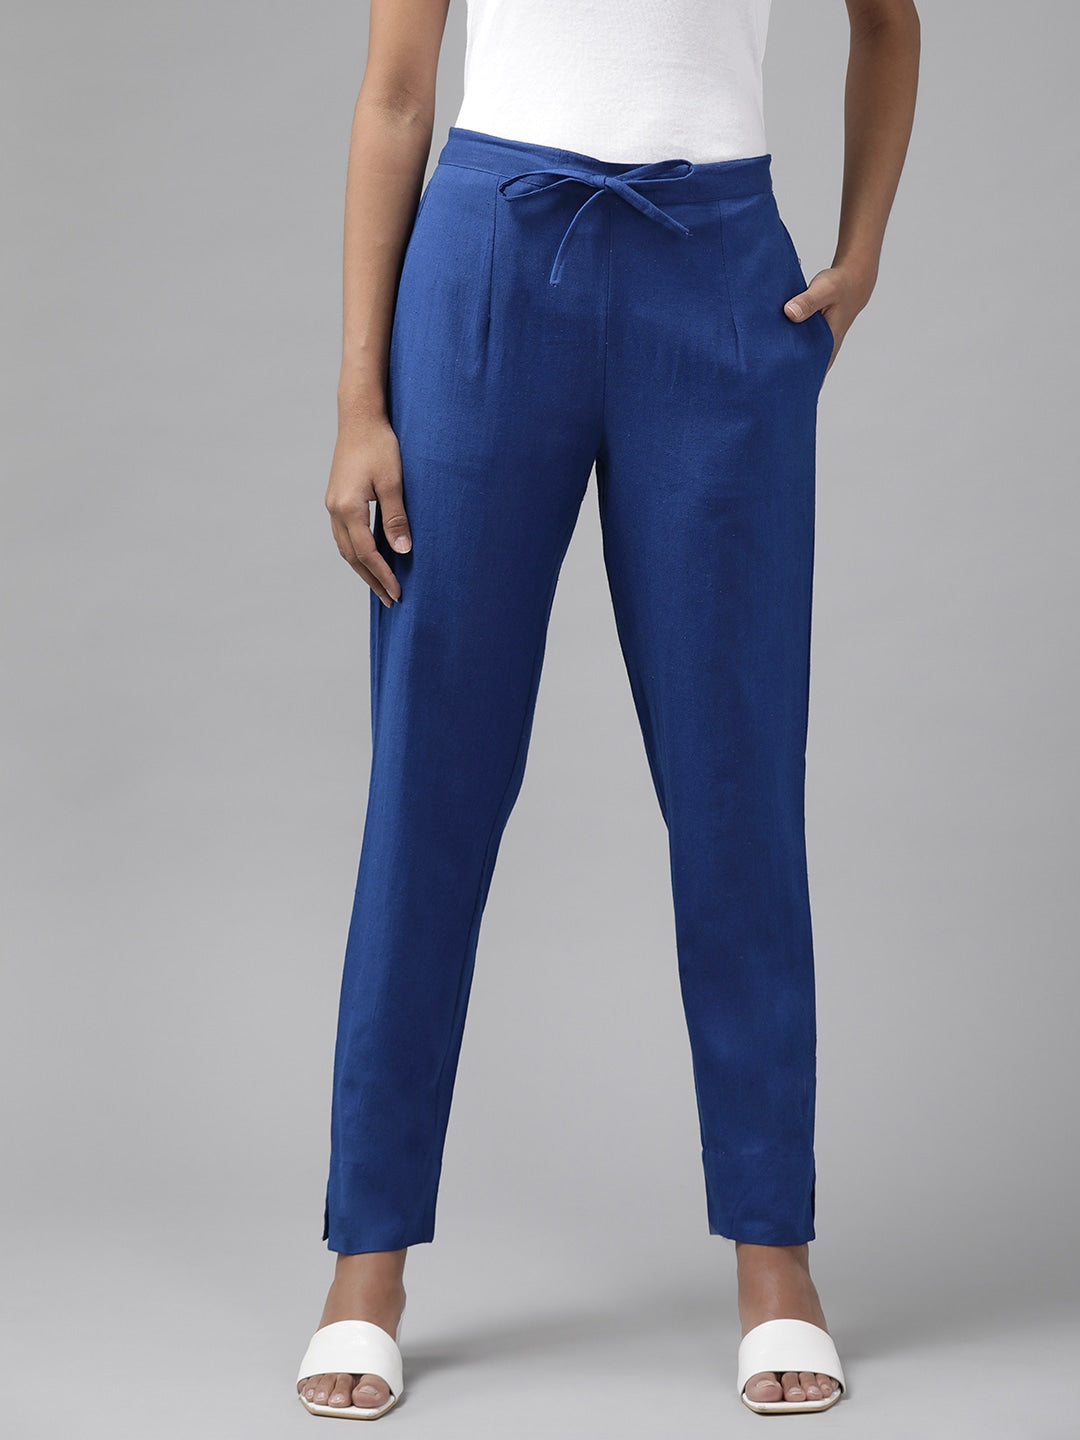 Blue Cotton Fit Trousers-Yufta Store-4206PNTBLS